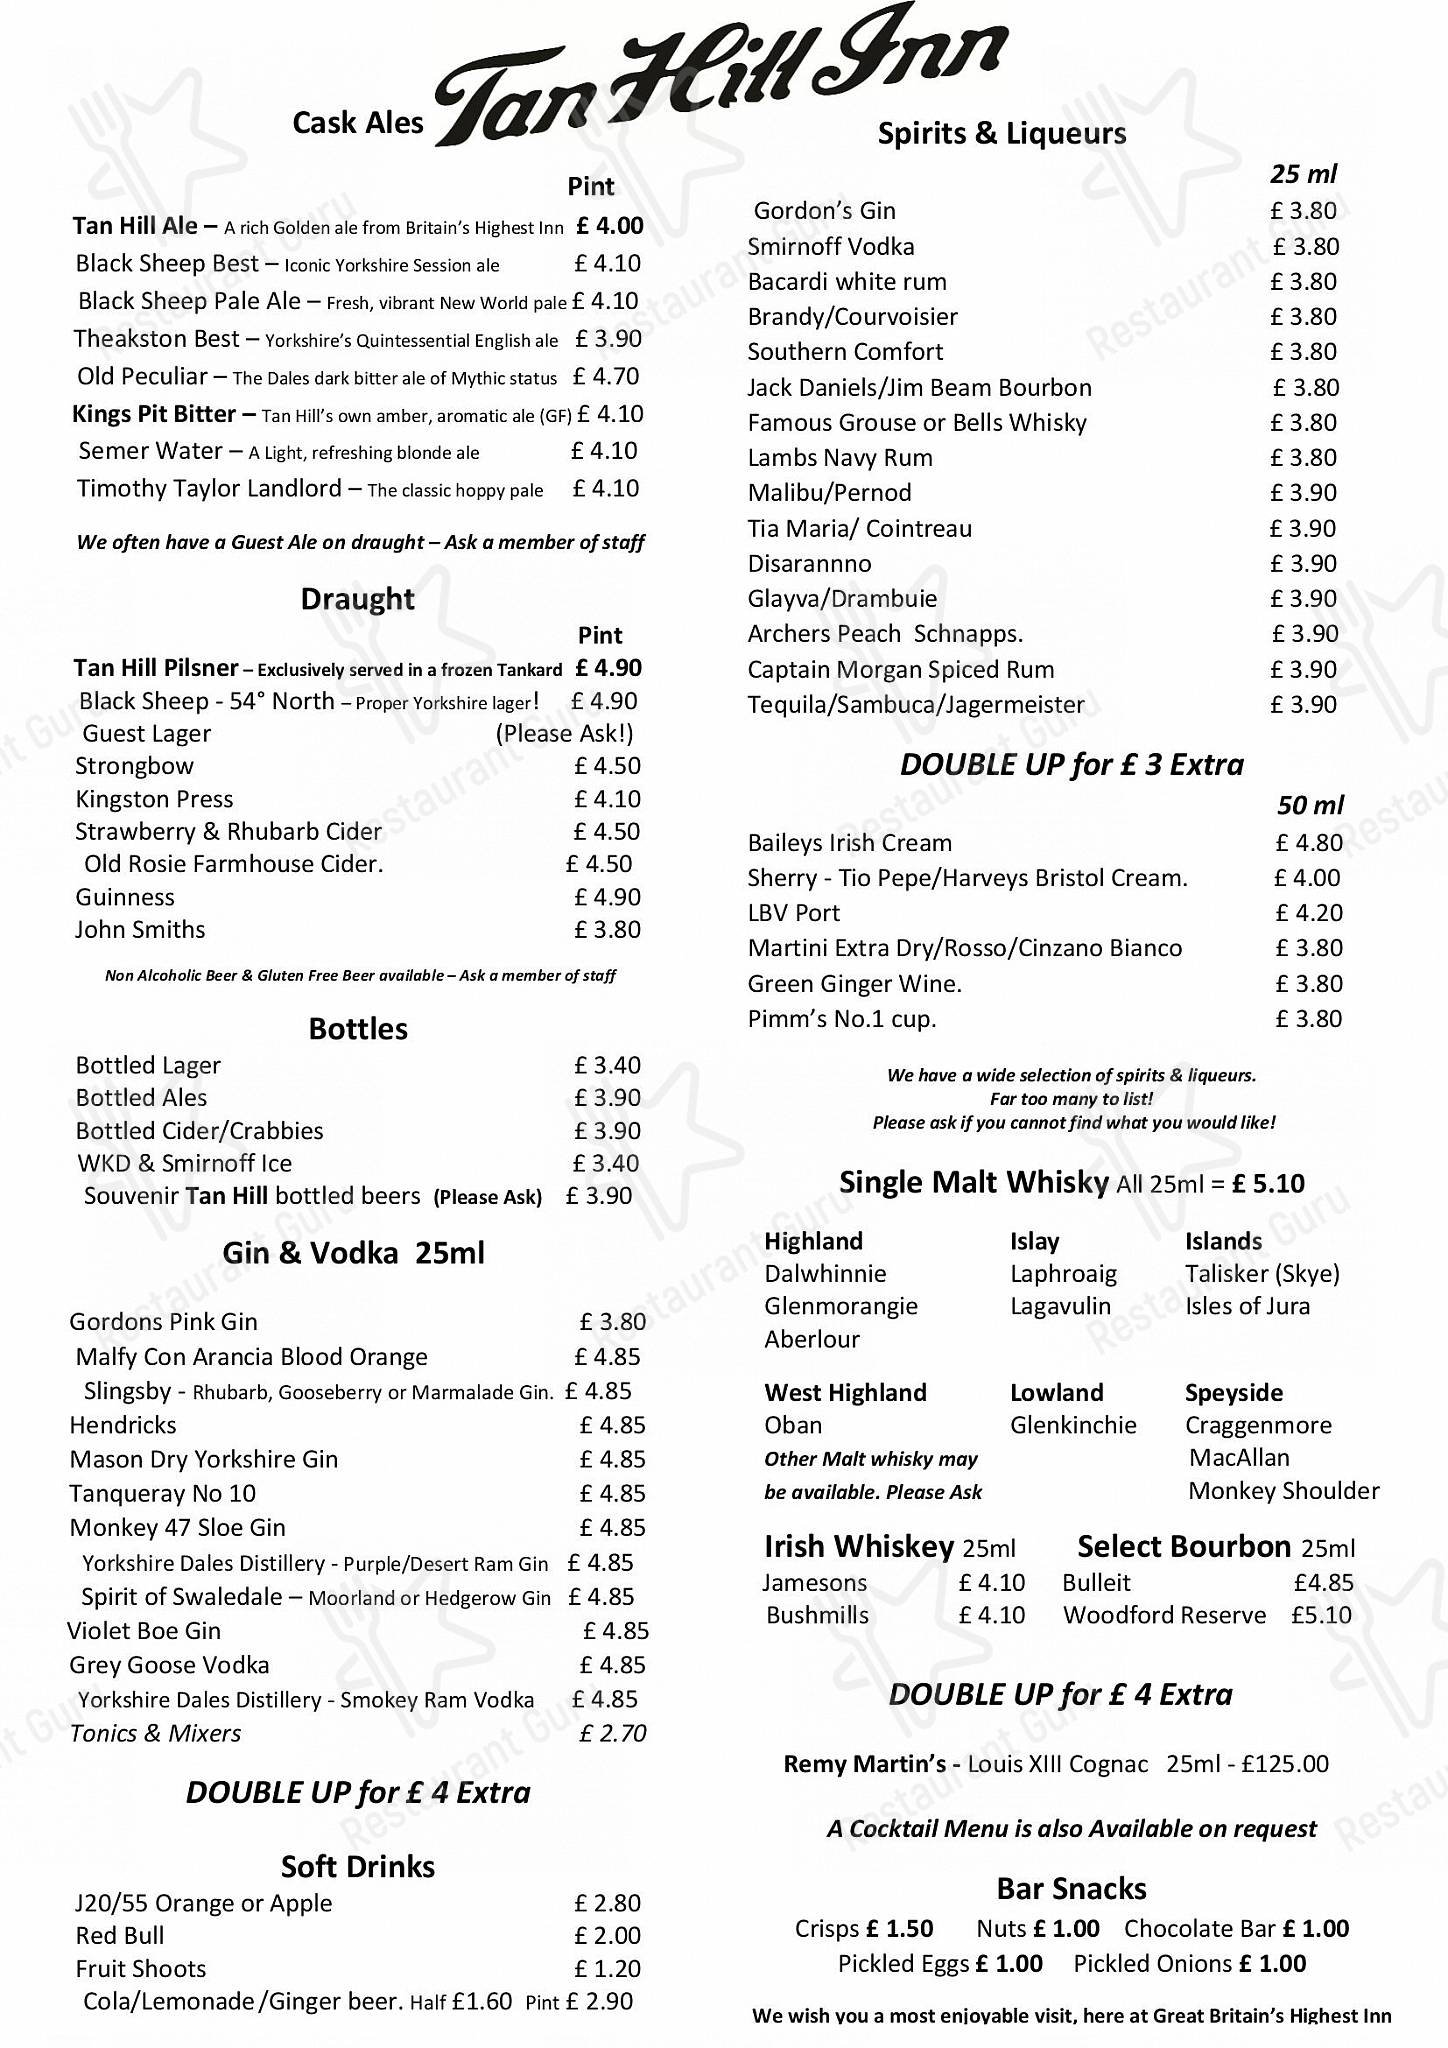 Tan-Hill-Inn-Pub-and-bar-drinks-menu.jpg